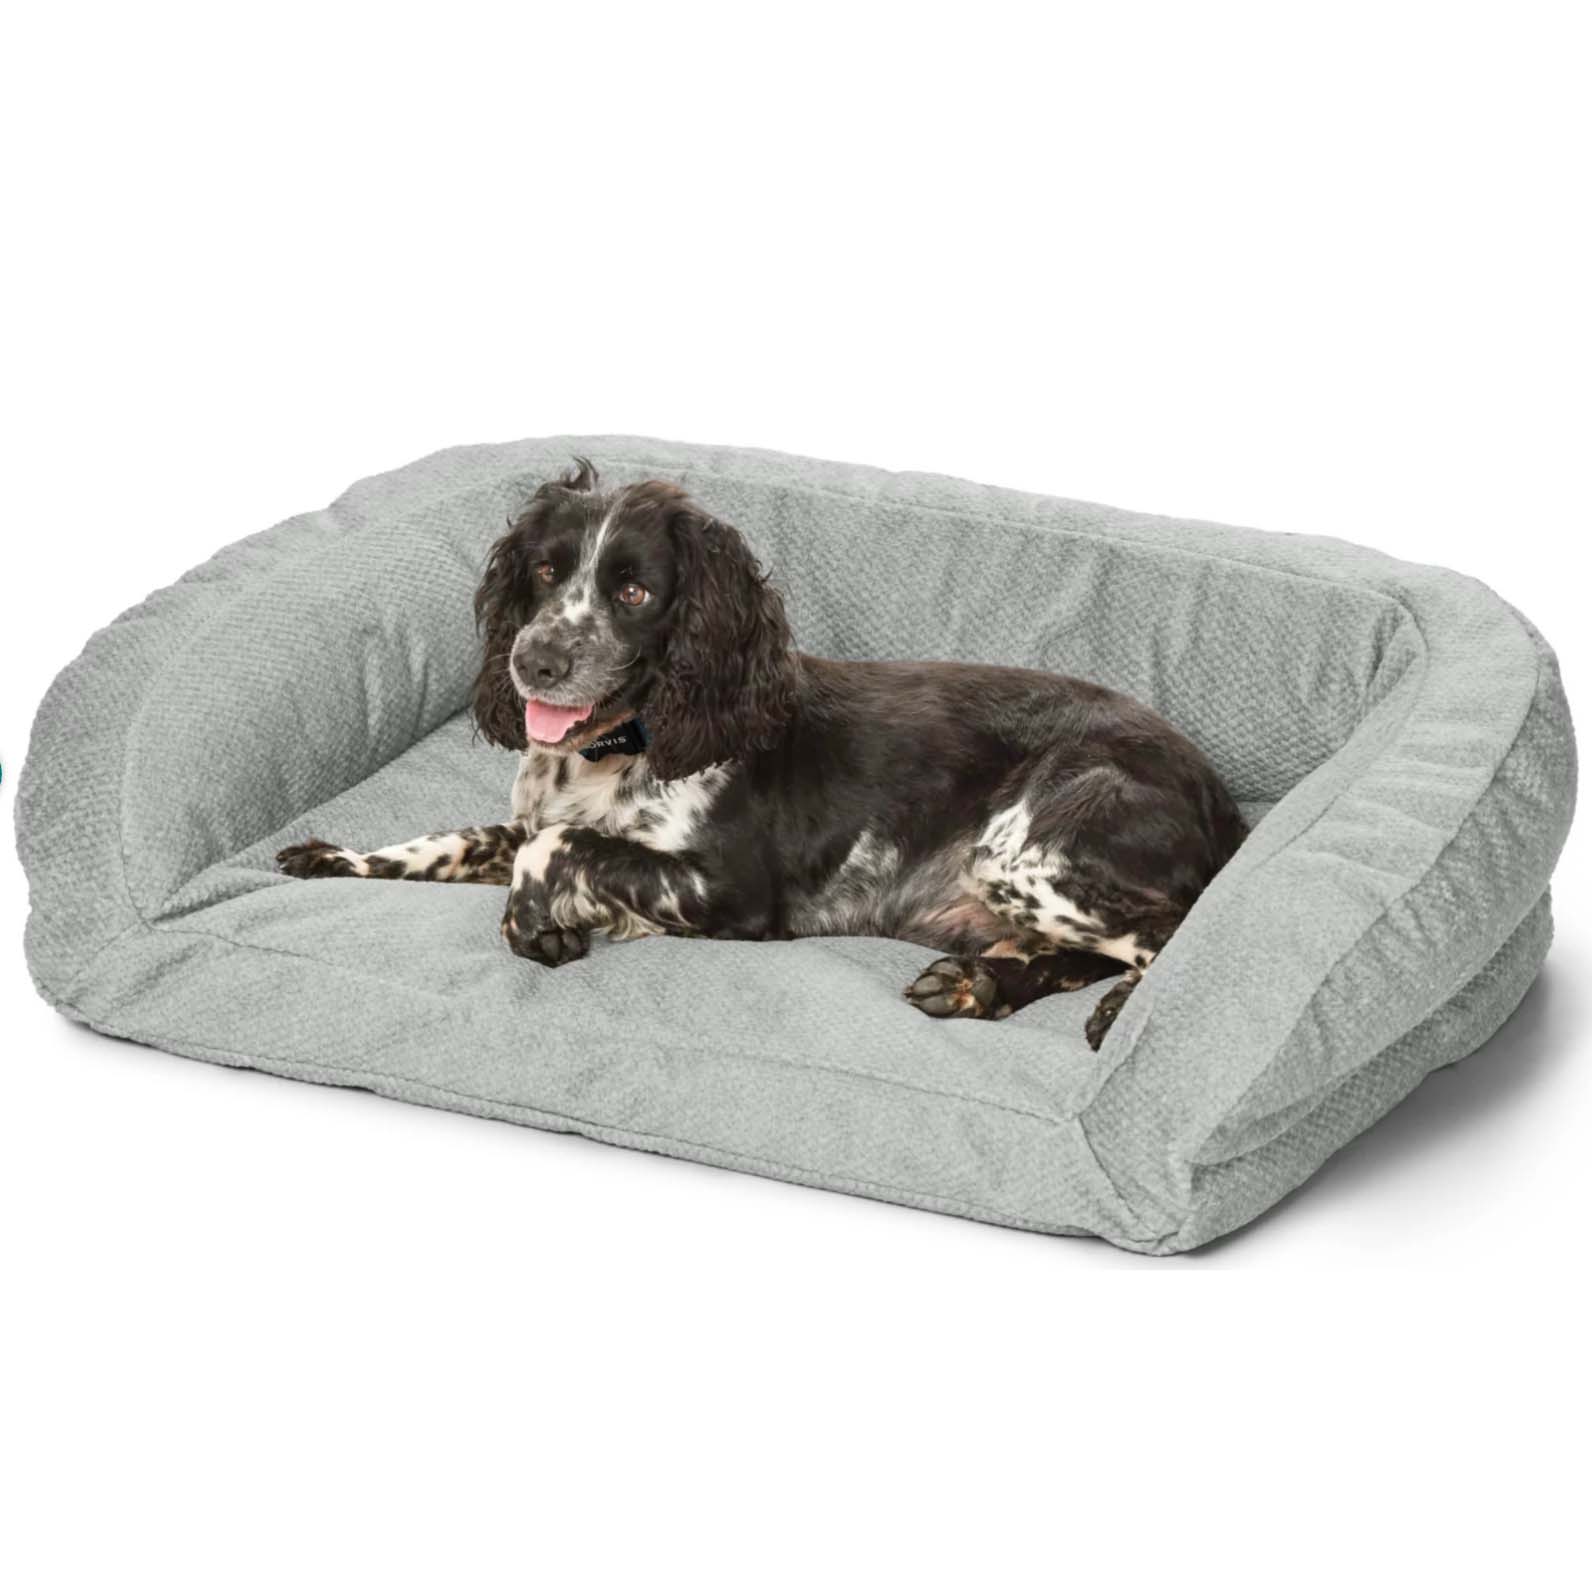 Dog sitting on grey sofa-shaped dog bed